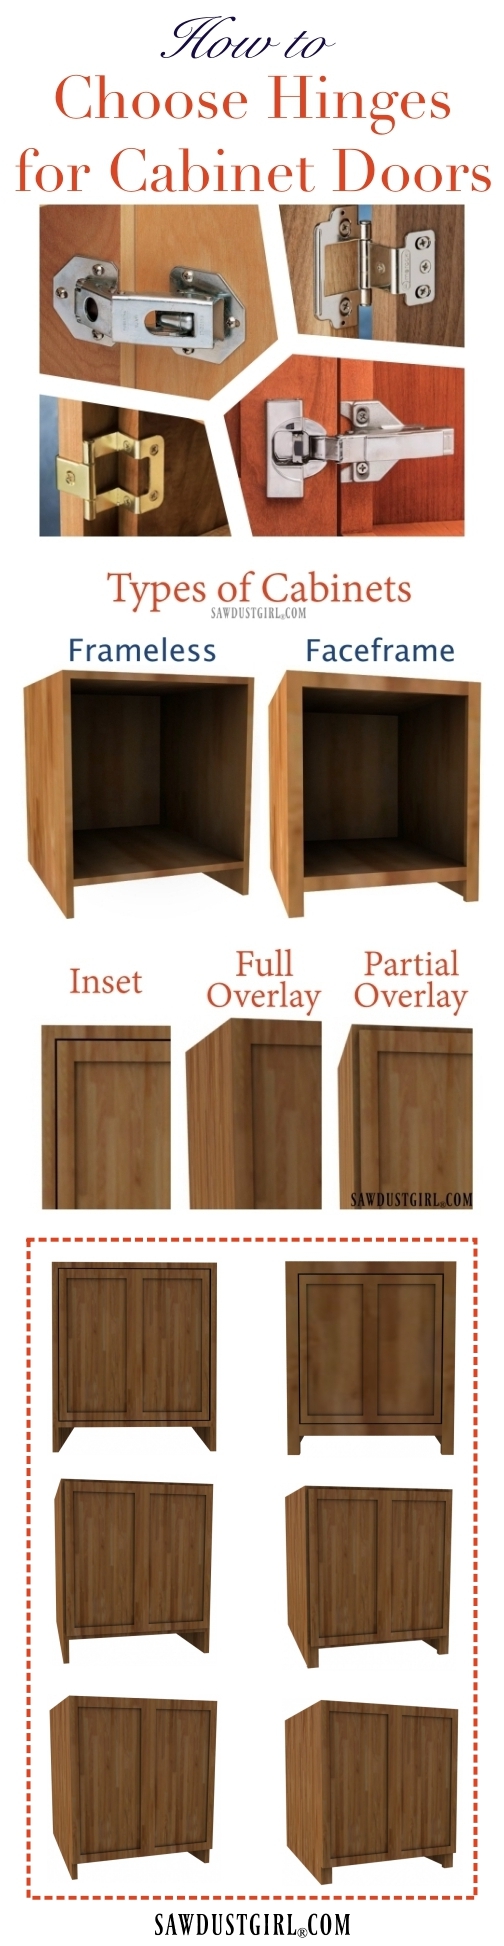 How to choose cabinet door hinges